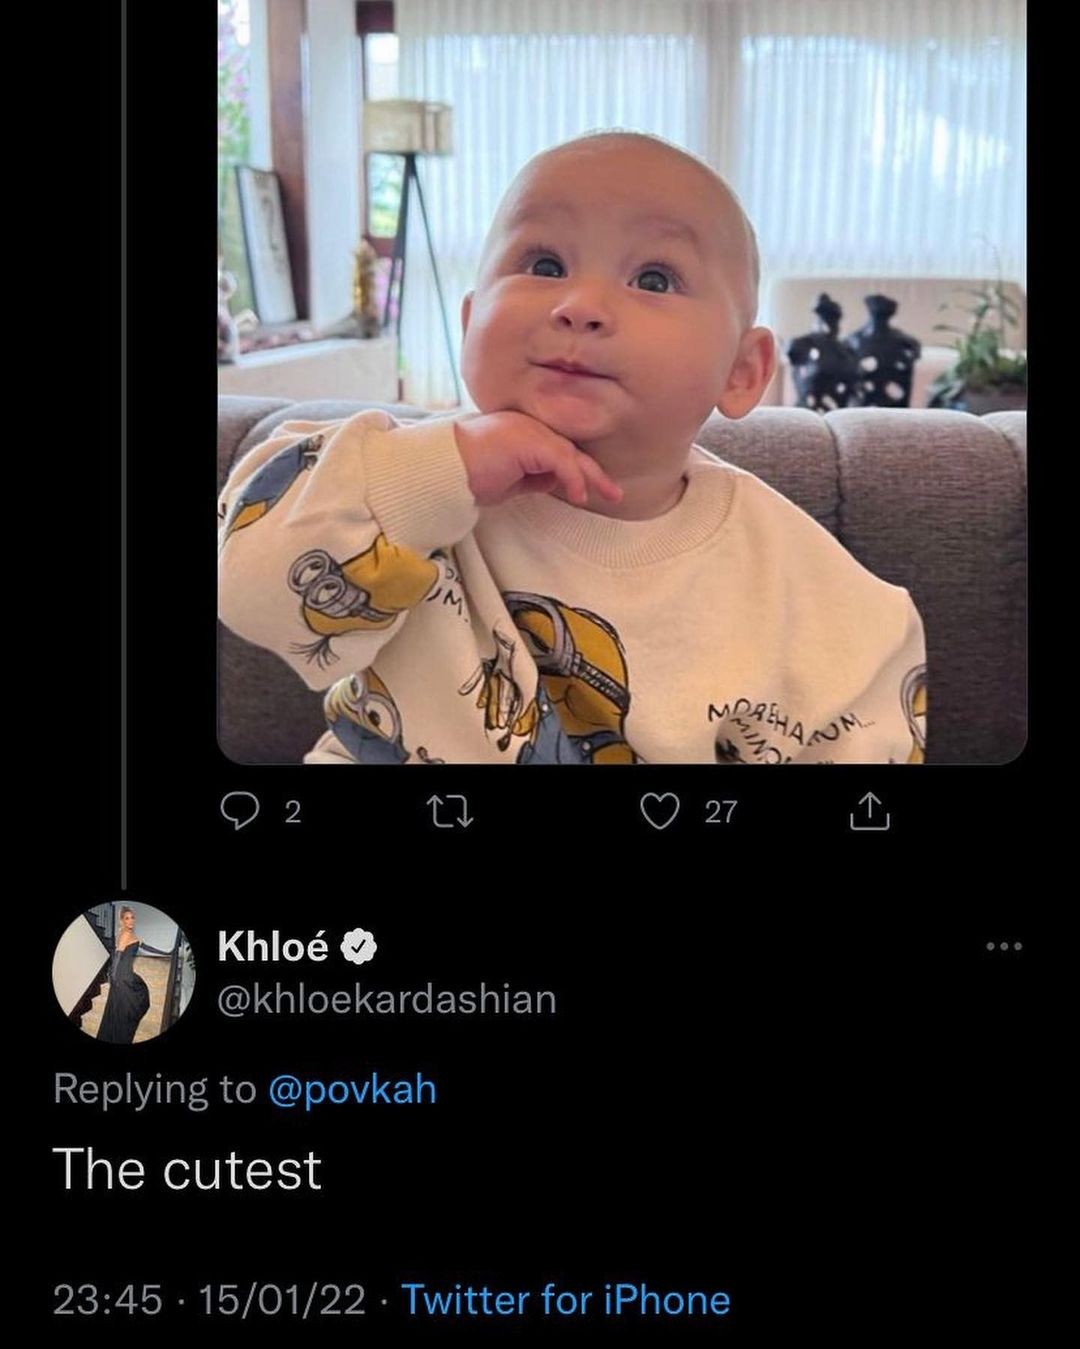 Khloé elogiou o pequeno Cris no Instagram (Foto: Reprodução/Twitter)